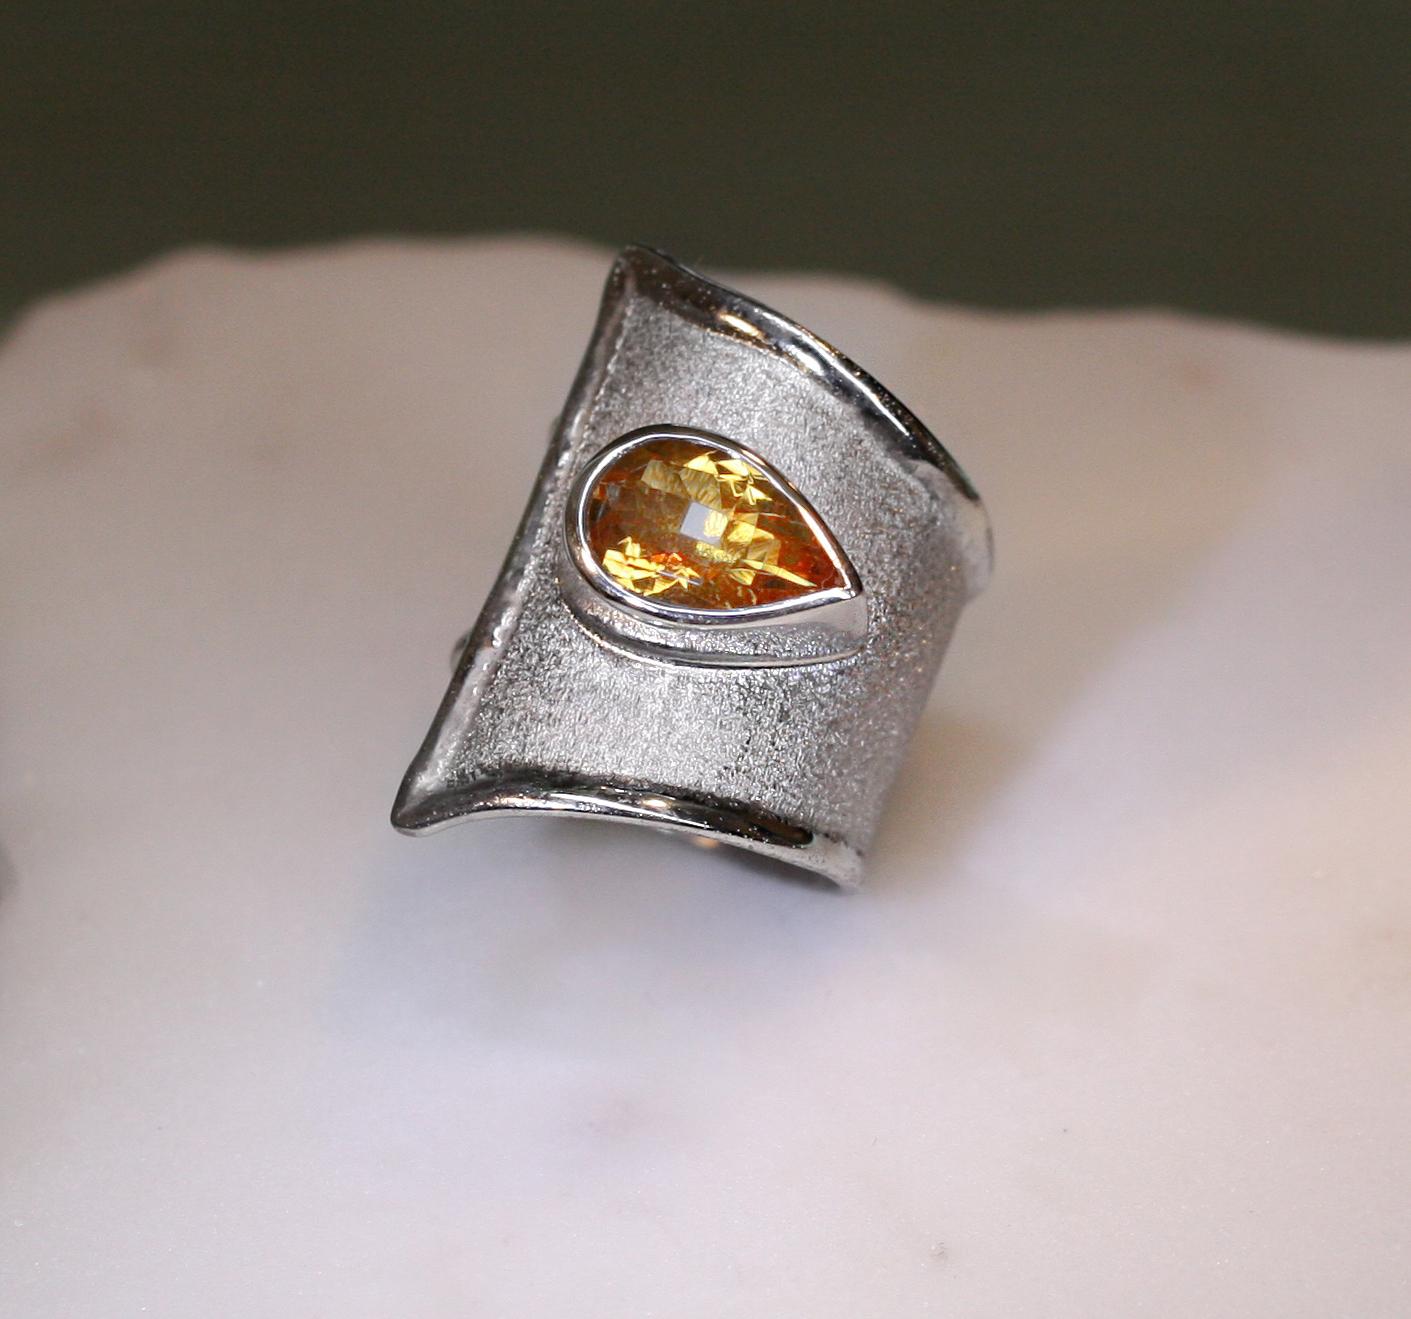 Yianni Creations verstellbarer Ring mit breitem Band, handgefertigt in Griechenland aus Feinsilber 950er Reinheit und mit Palladium beschichtet, um ihn vor dem Anlaufen zu schützen, ist eine Einzelanfertigung. Dieser wunderschöne Ring mit 3,80 Karat